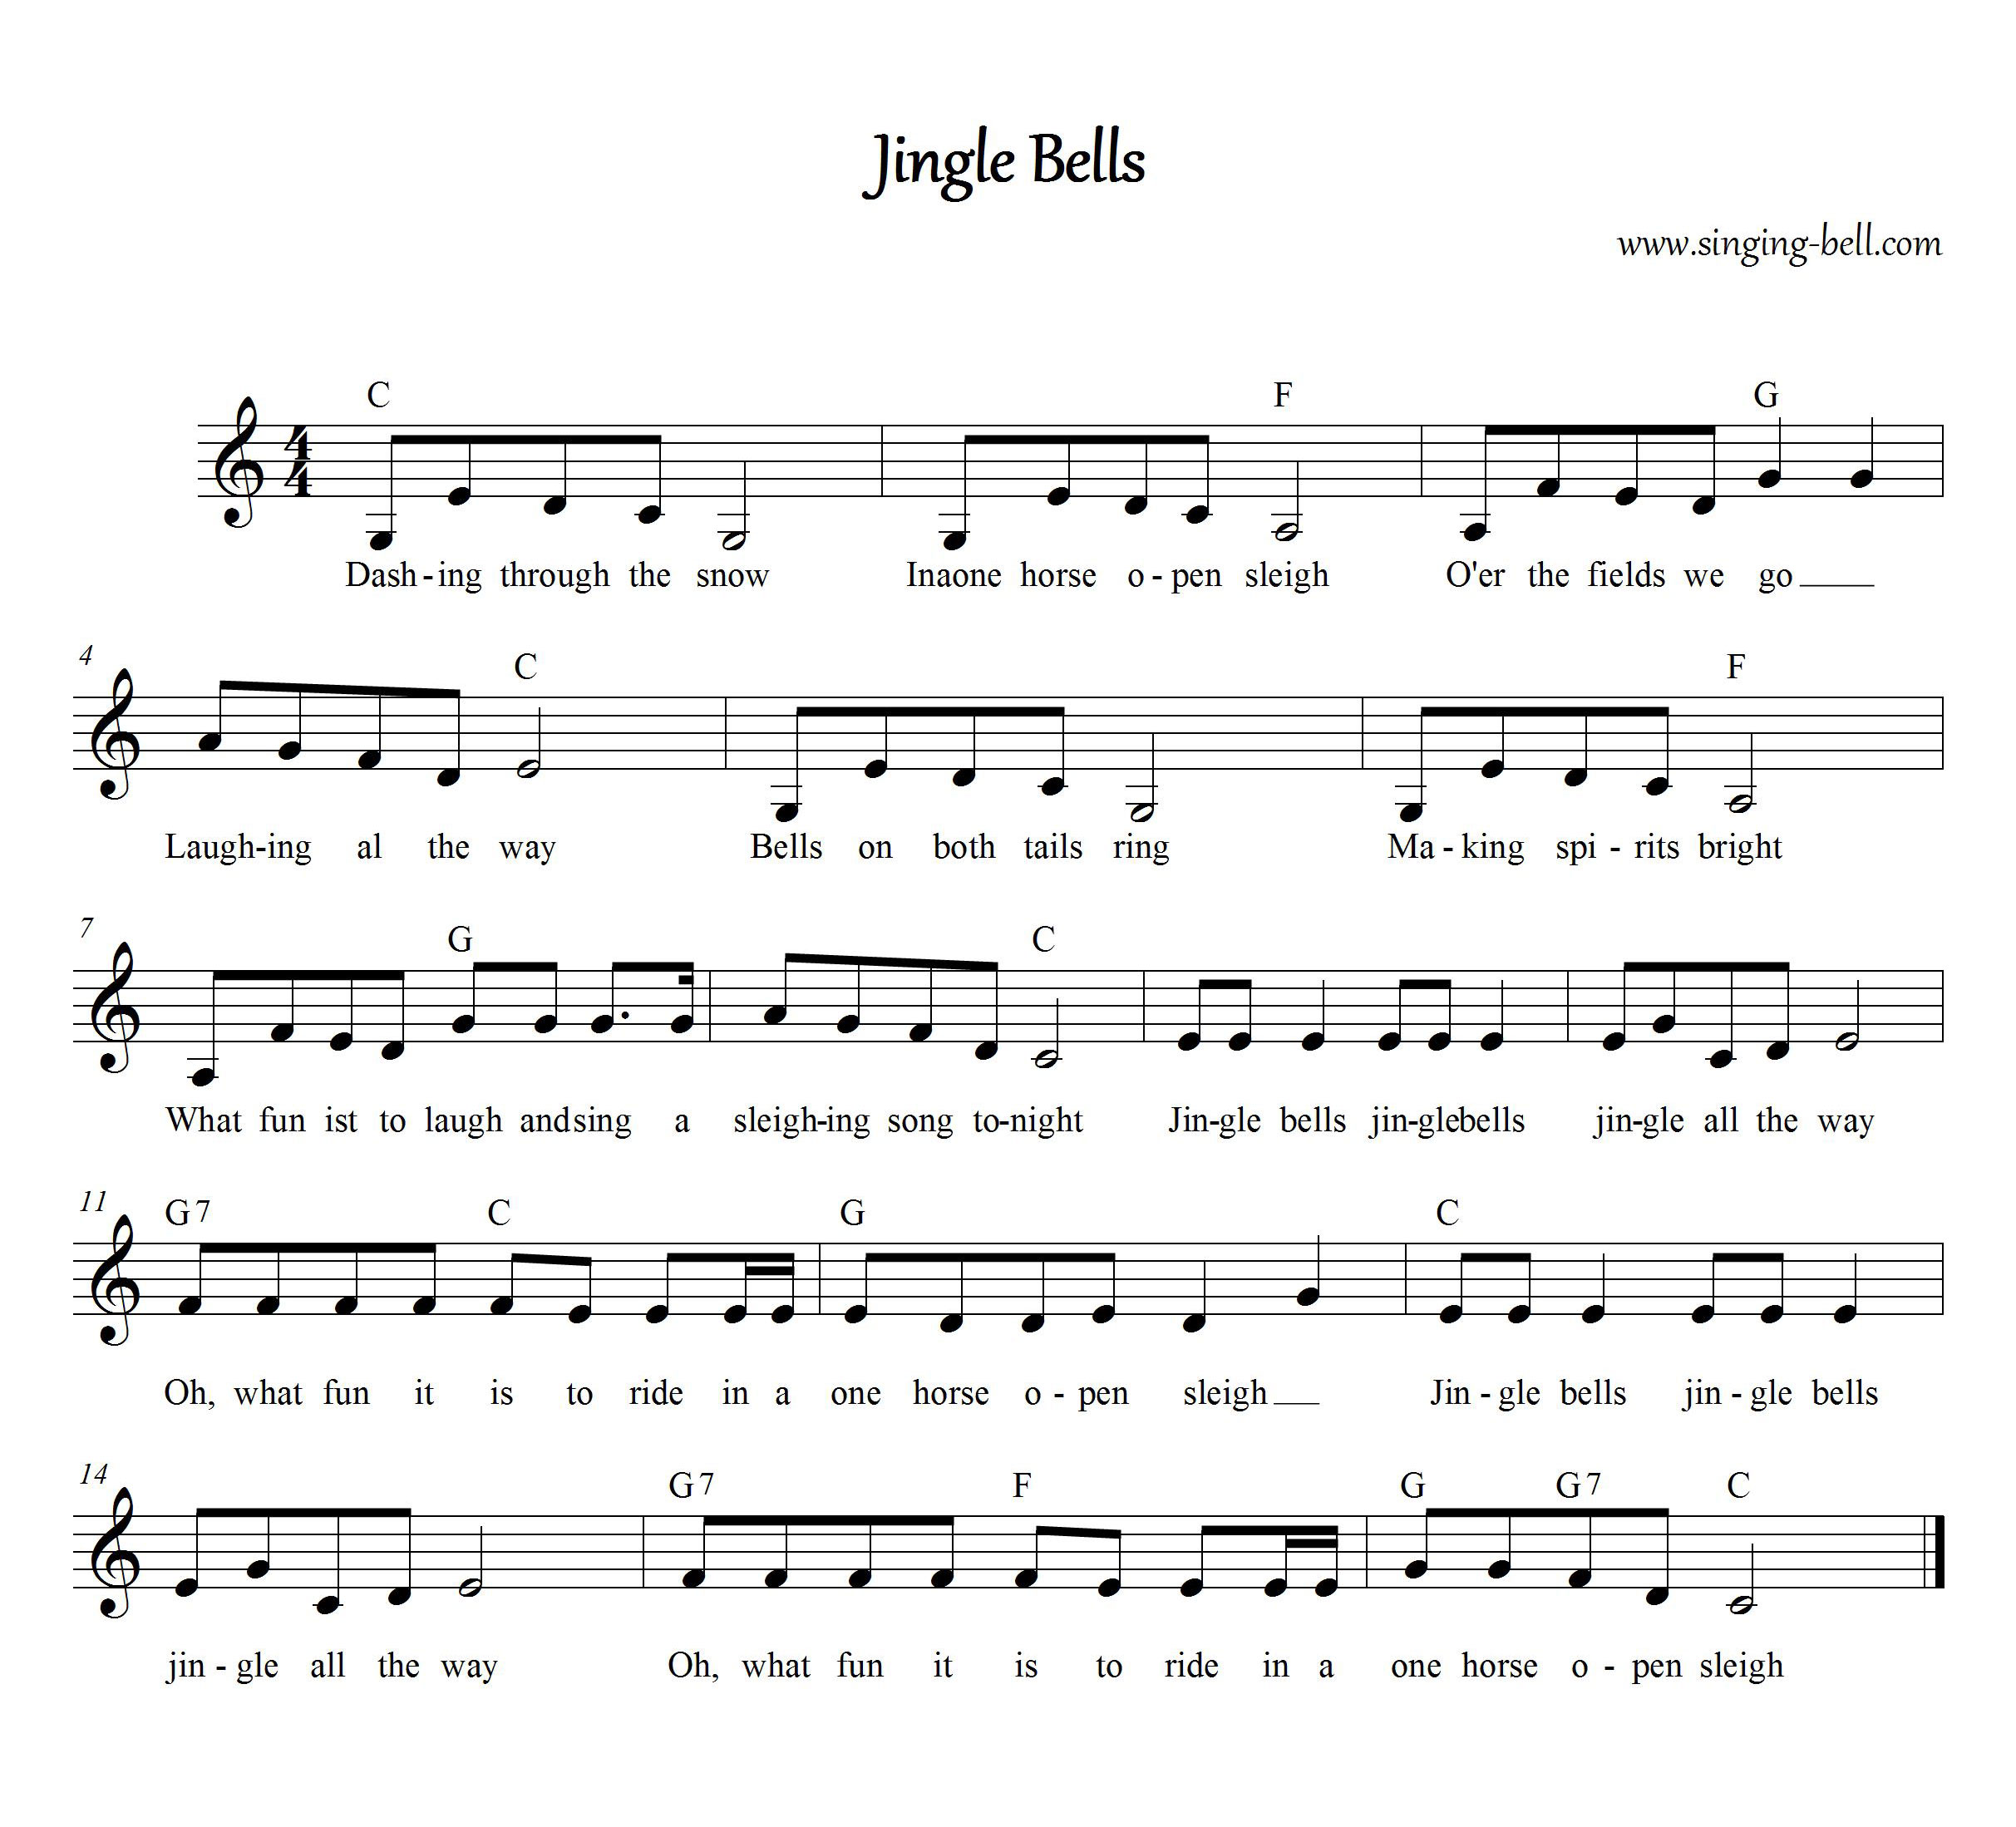 Jingle Bells Printable Sheet Music Printable World Holiday